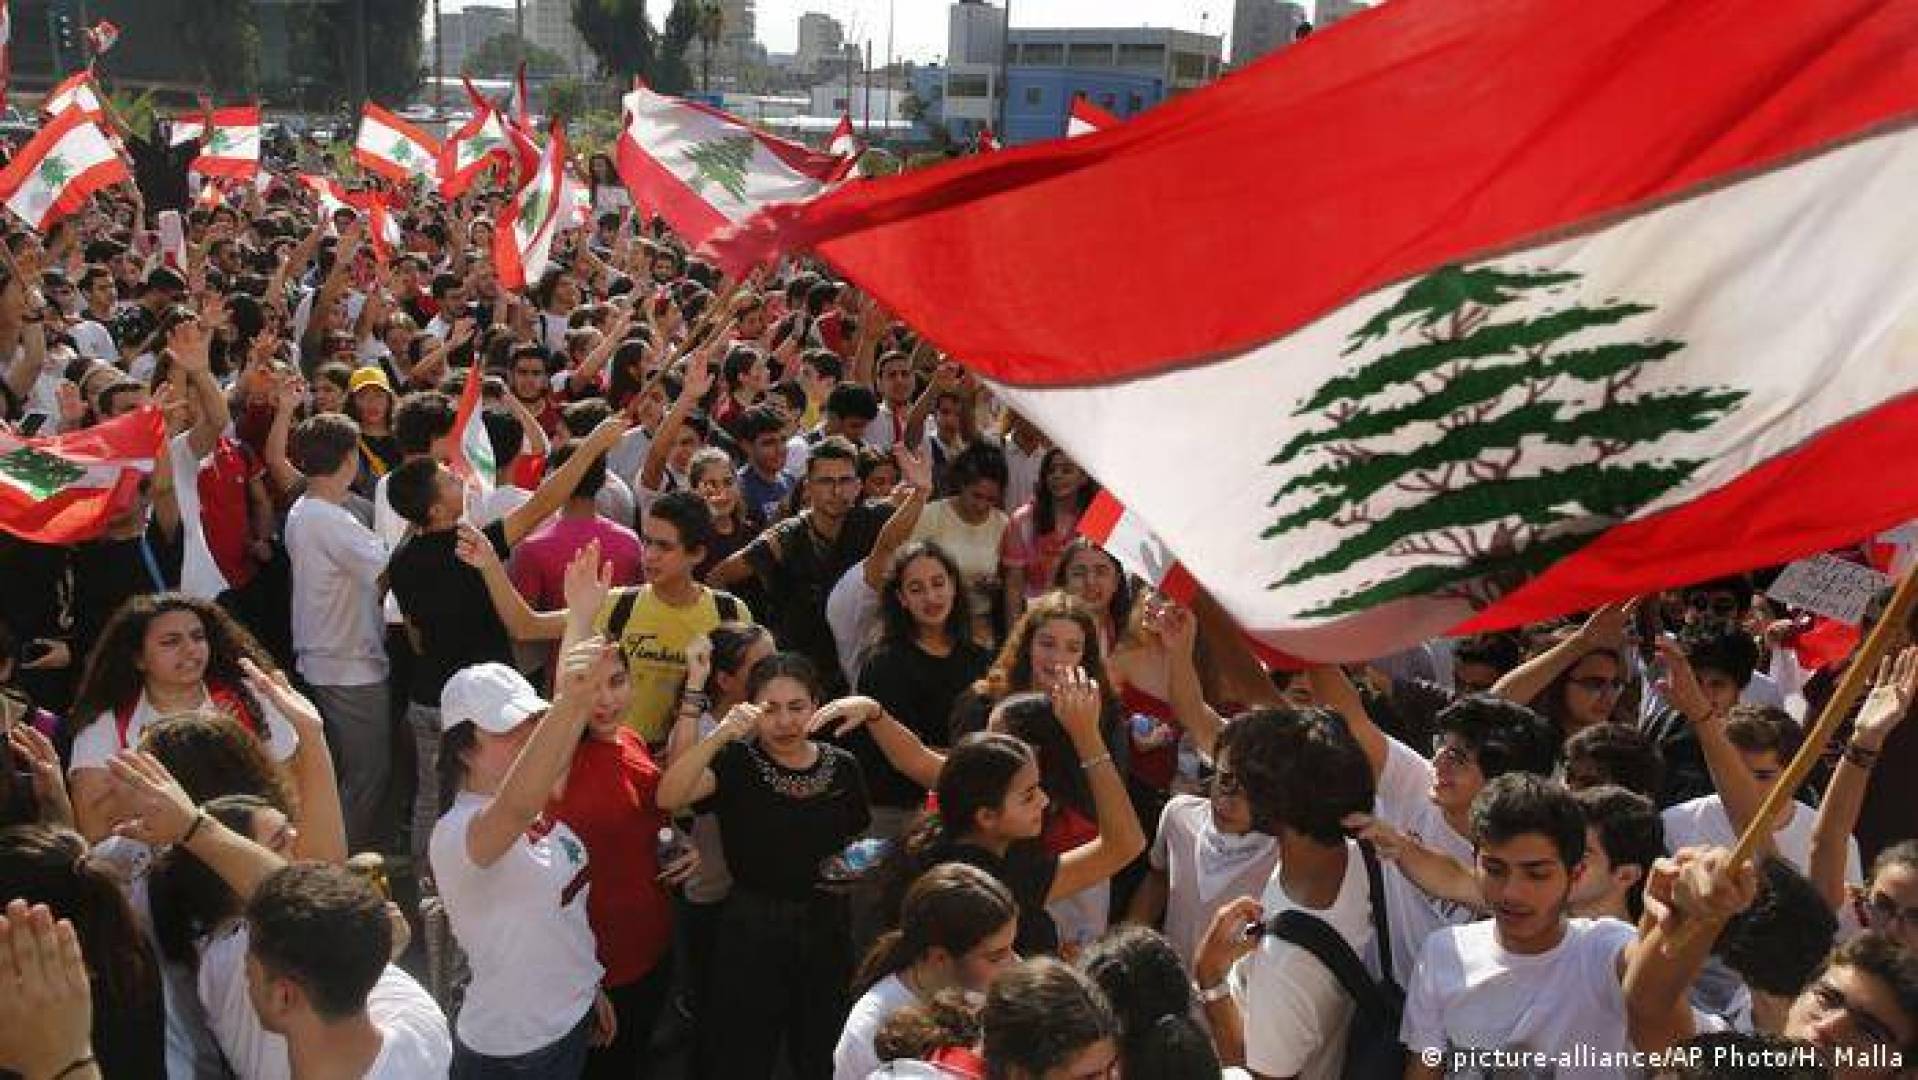 كيسنجر أكد على ما قاله ناجي أمهز والمجتمع الدولي يهجر اللبنانيين والمقاومة تدافع عنهم>